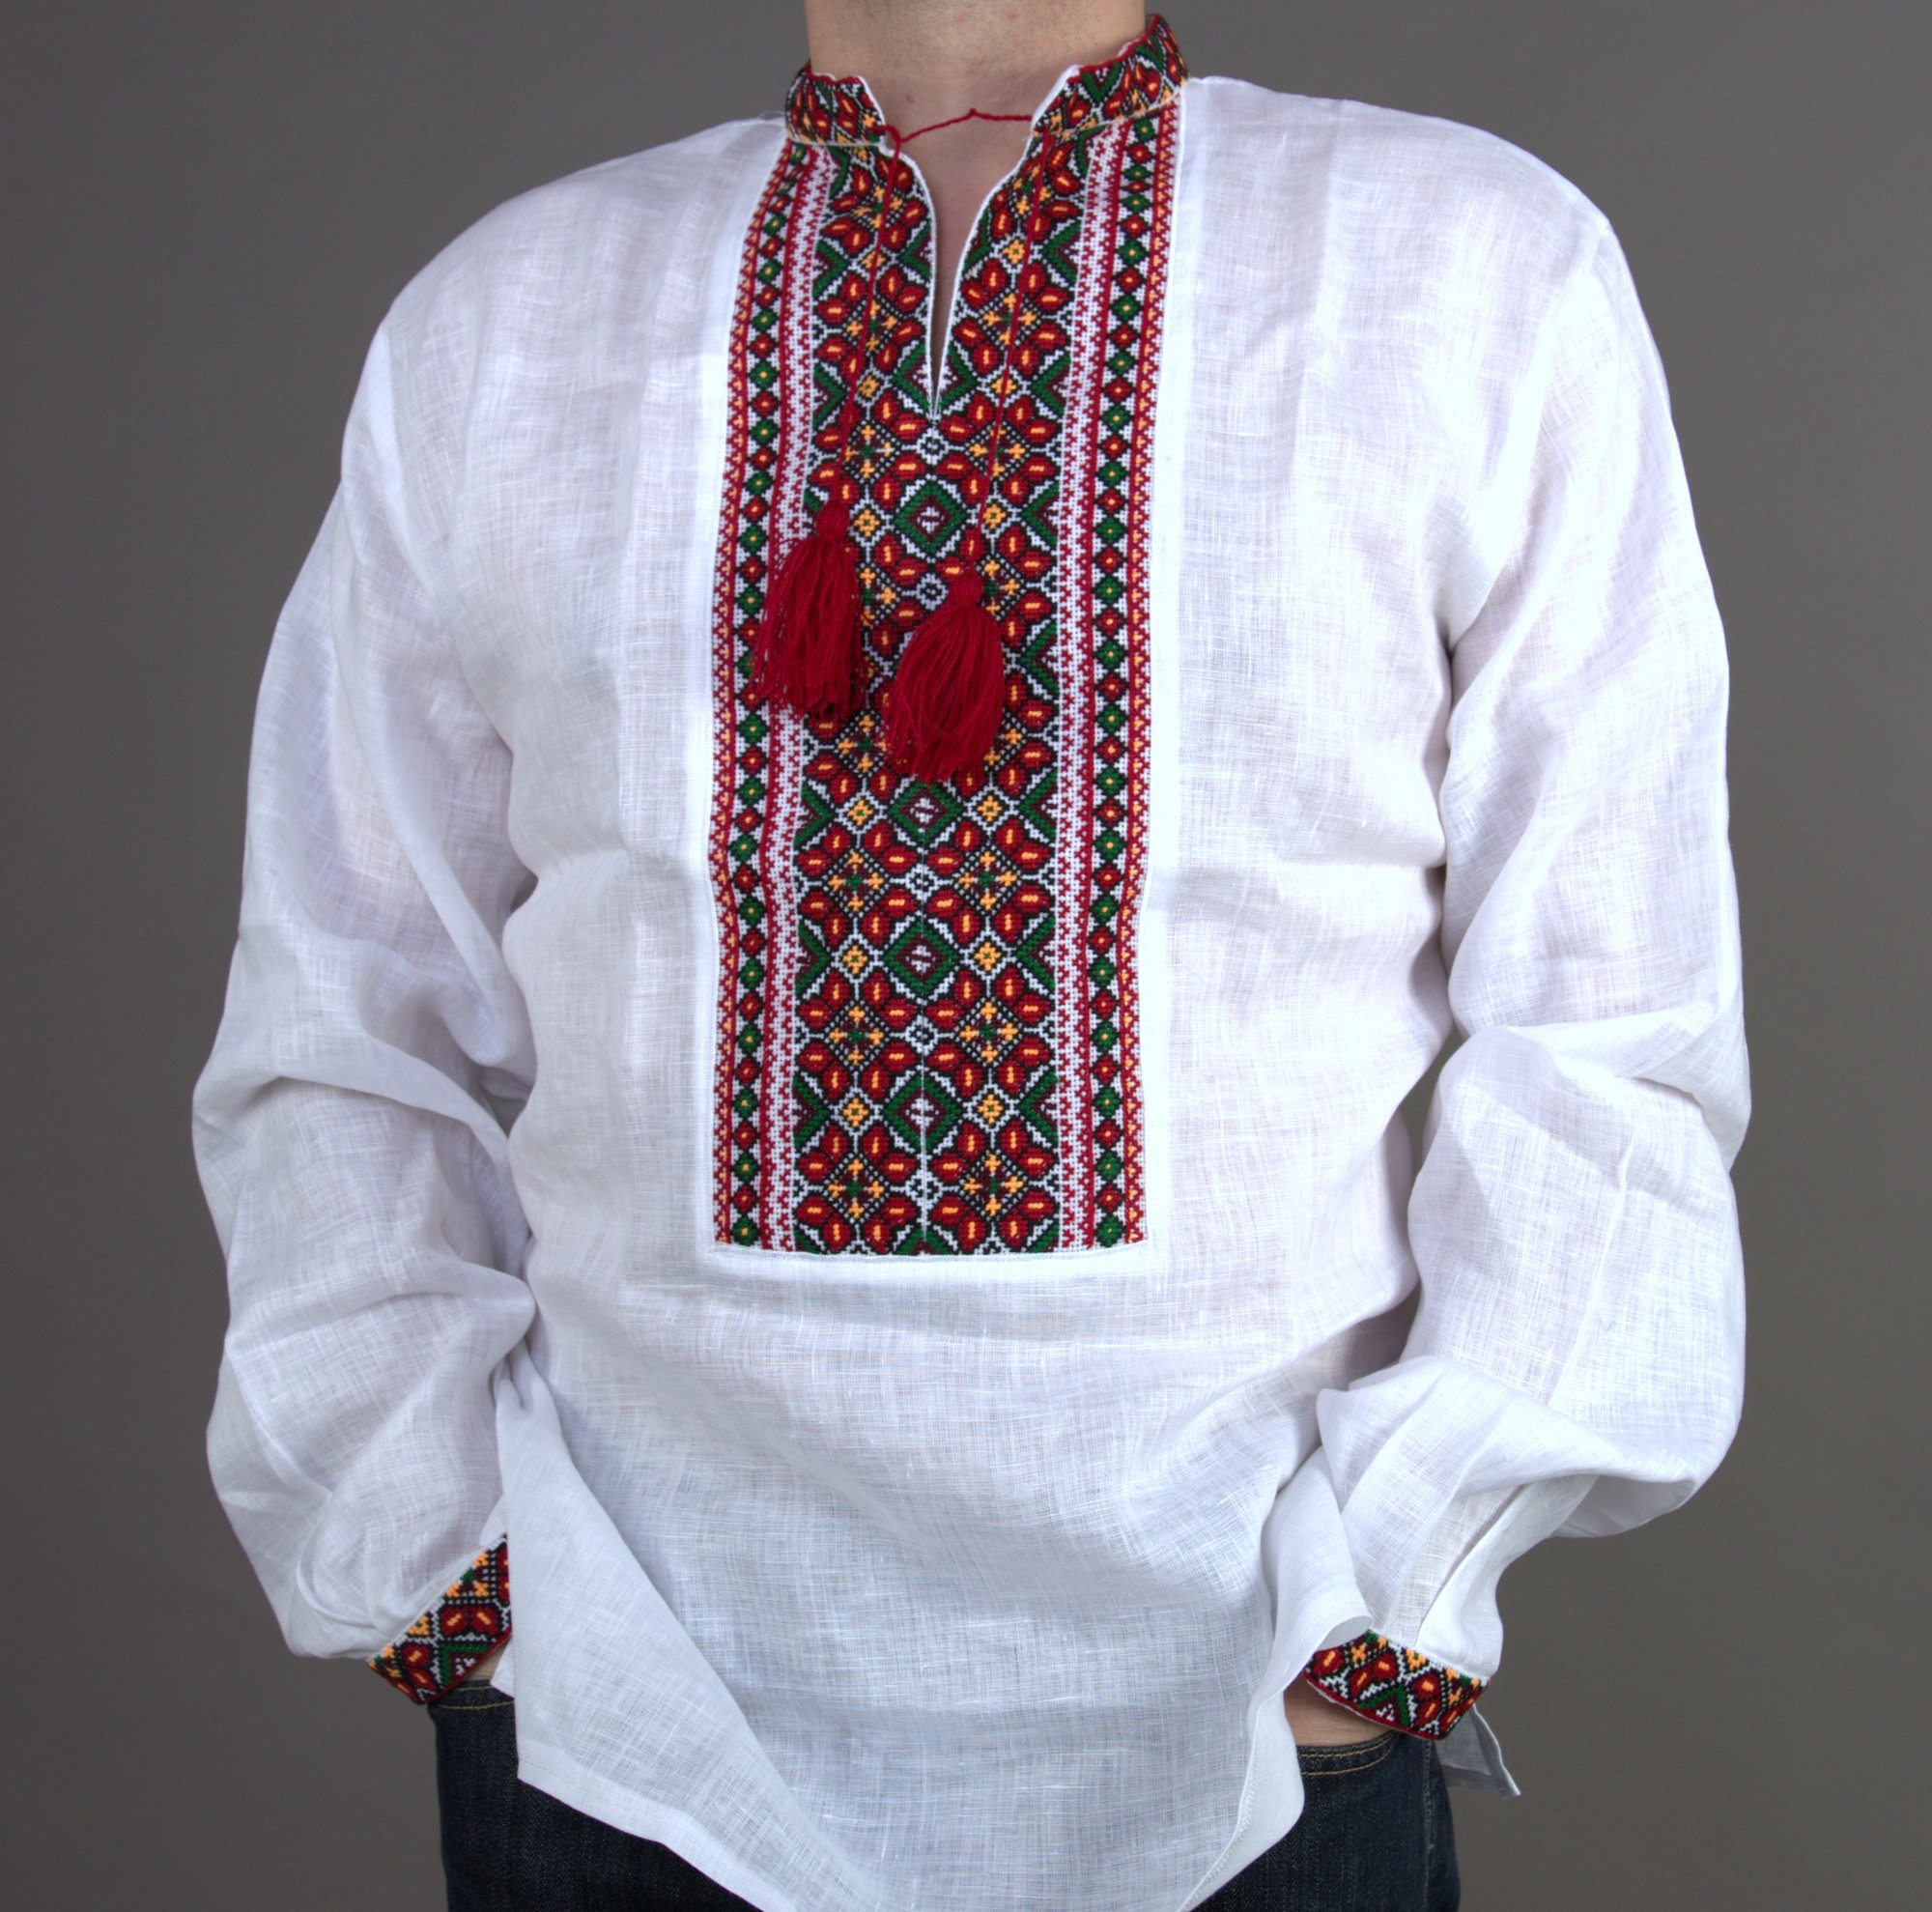 Vyshyvanka Mens Ukrainian Embroidered Shirt New Bukovina Handmade Linen White Red Green XL Easter Gift